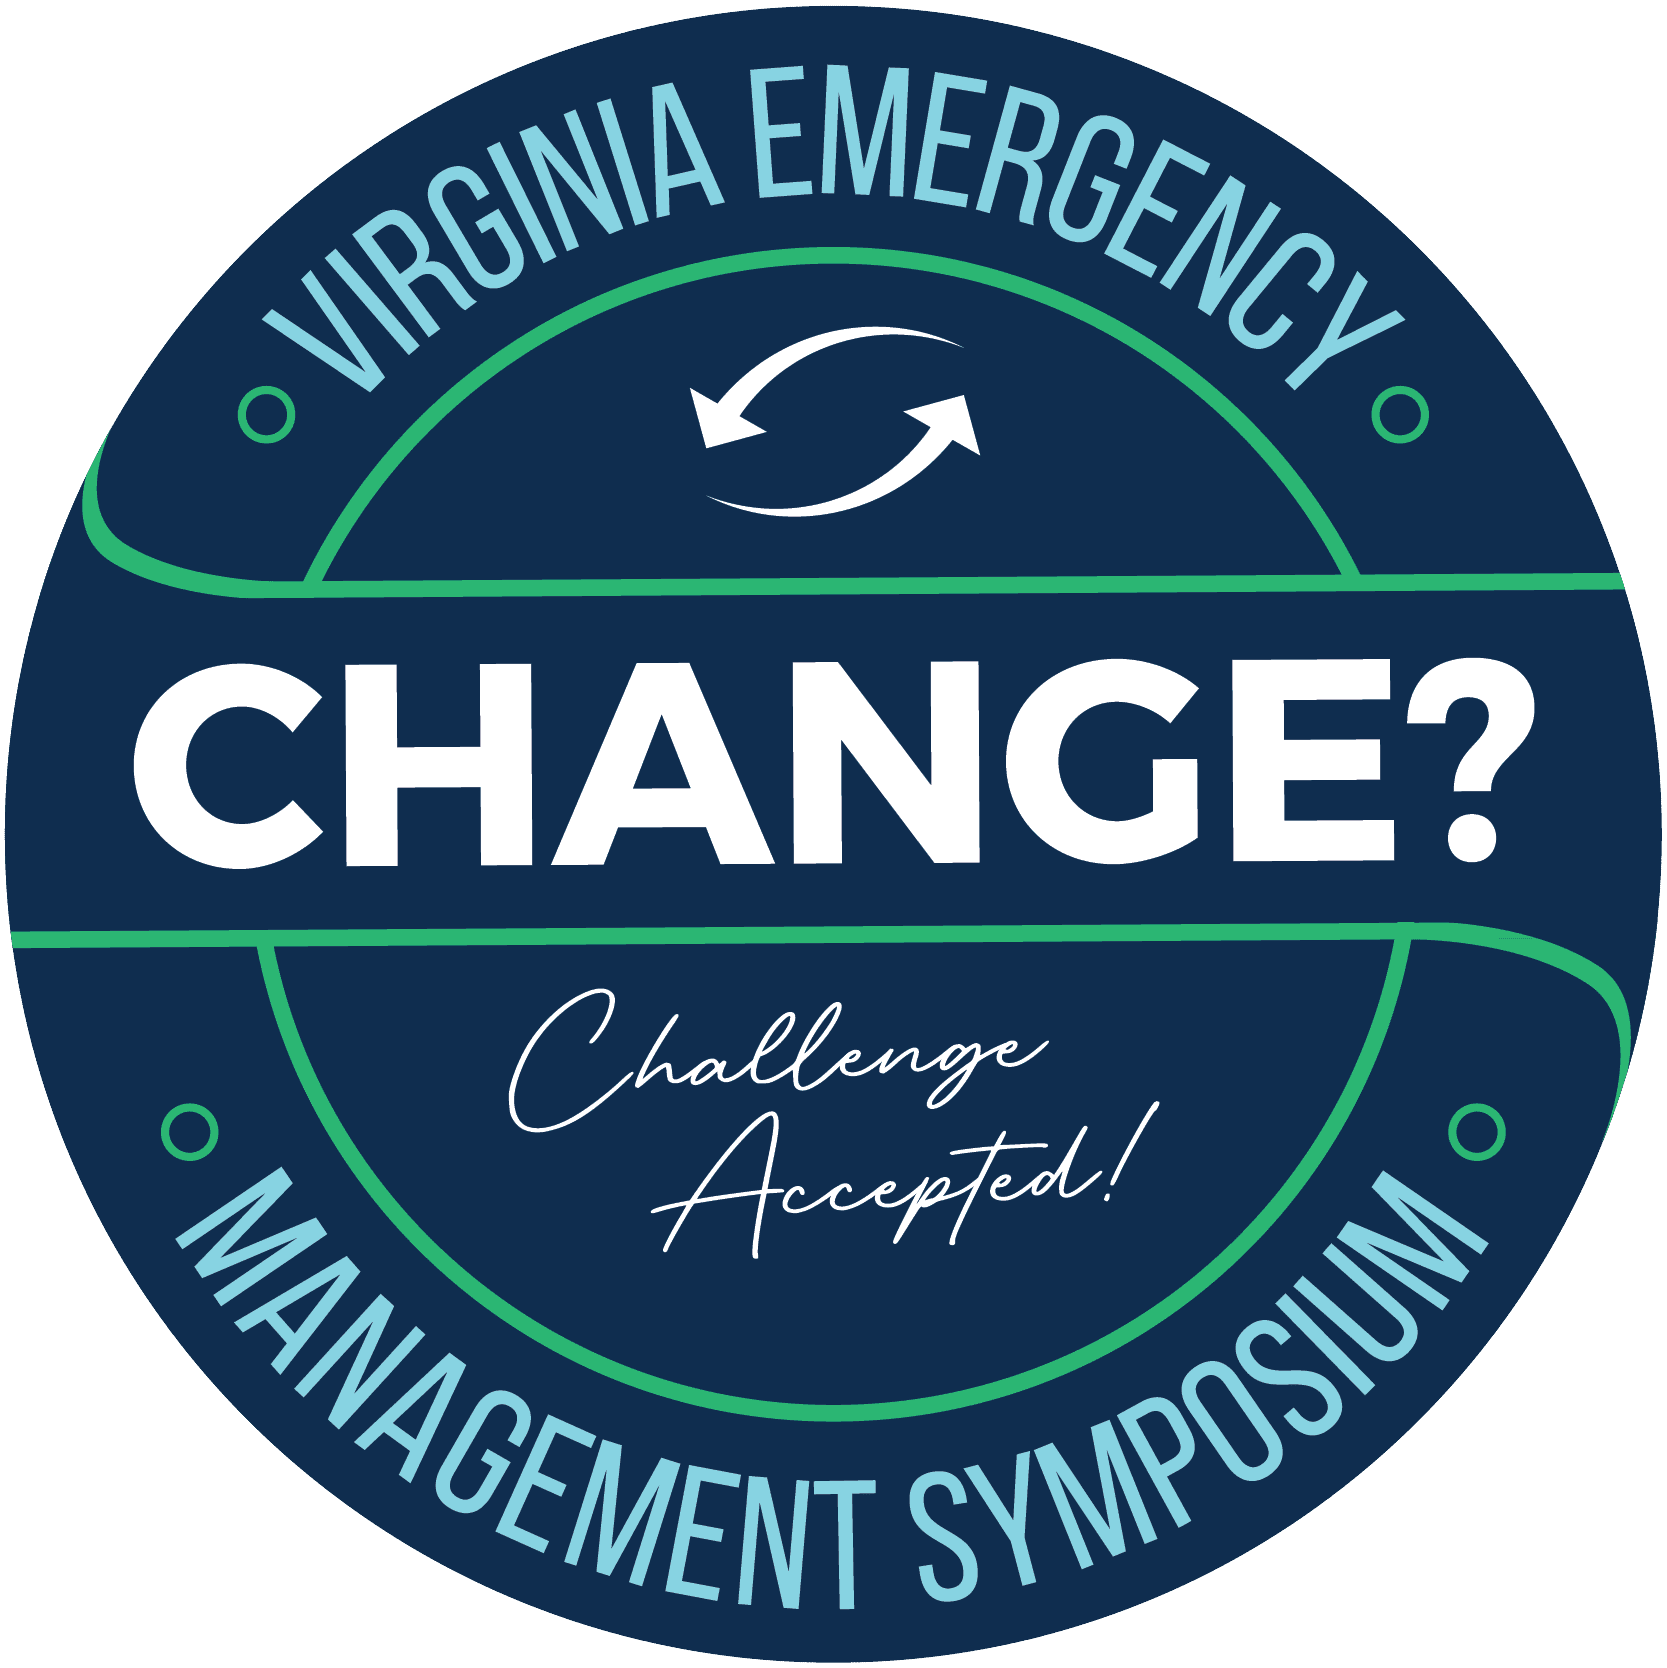 virginia emergency management symposium logo